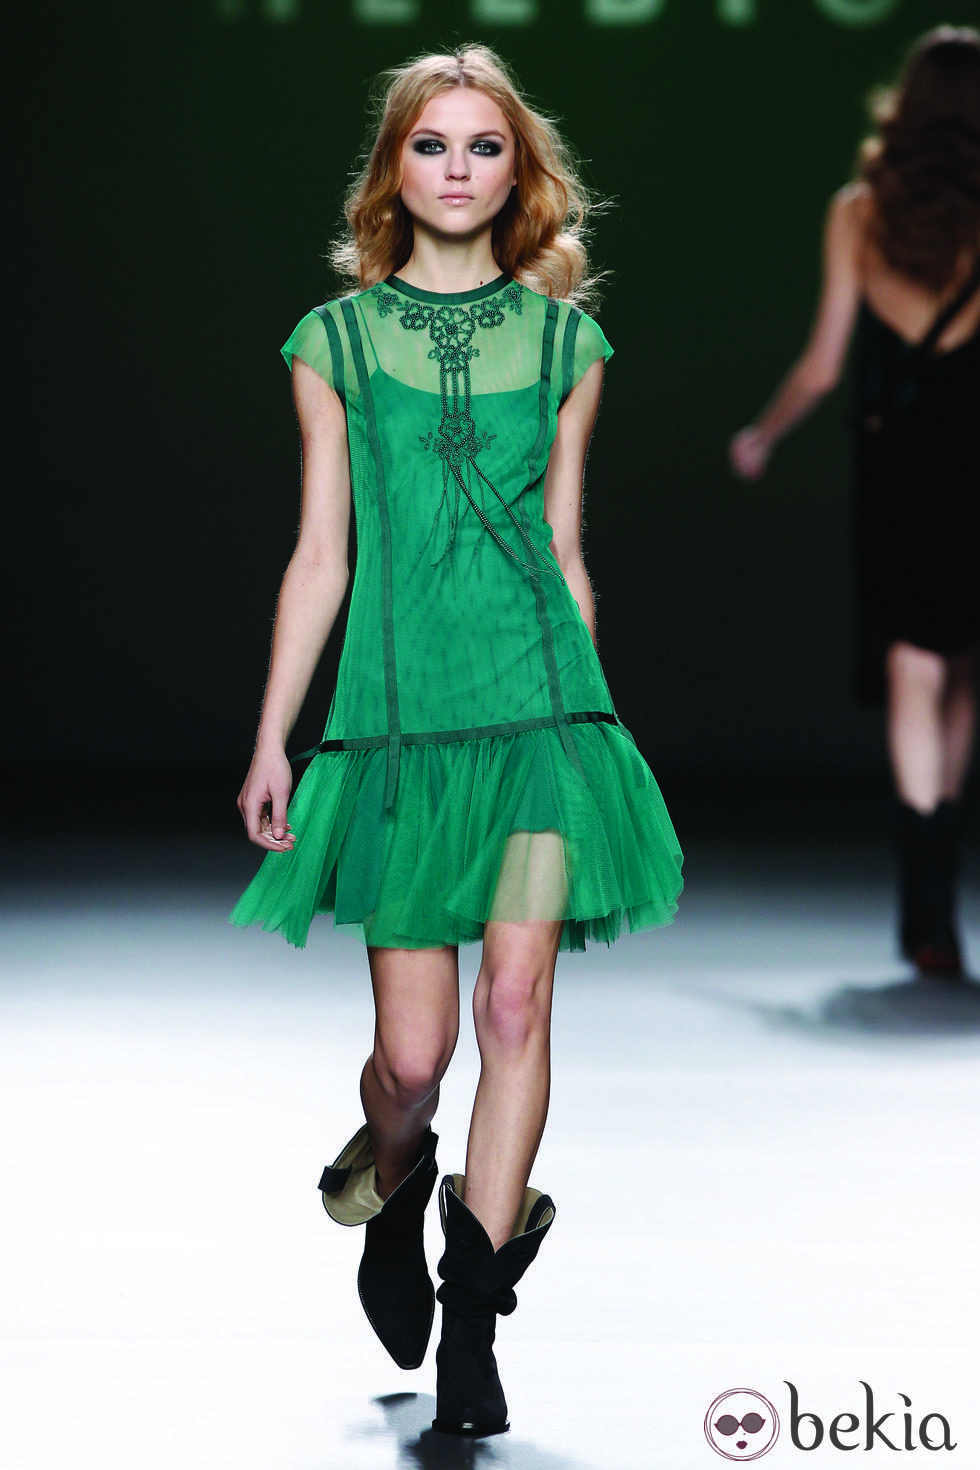 Vestido de tul verde de la colección otoño/invierno 2012/2013 de Teresa Helbig